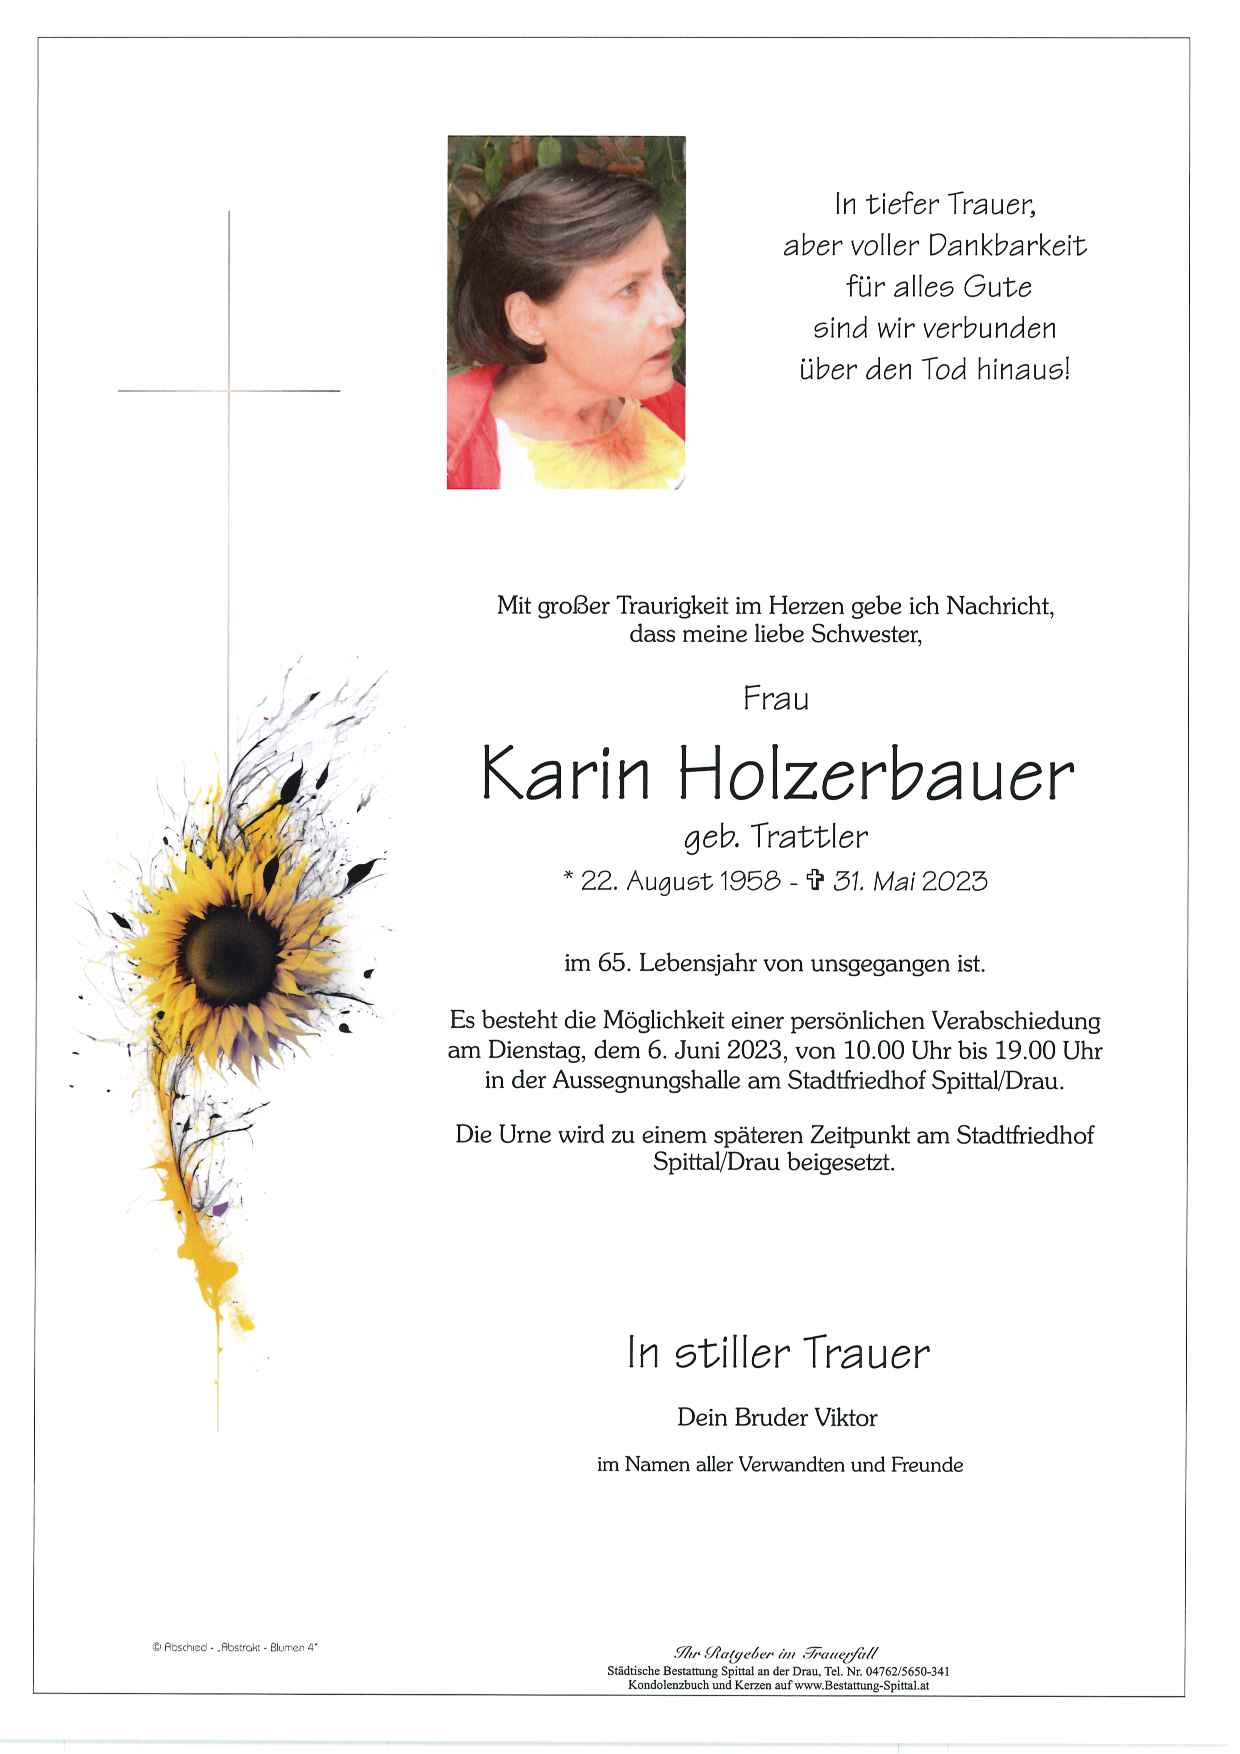 Karin Holzerbauer